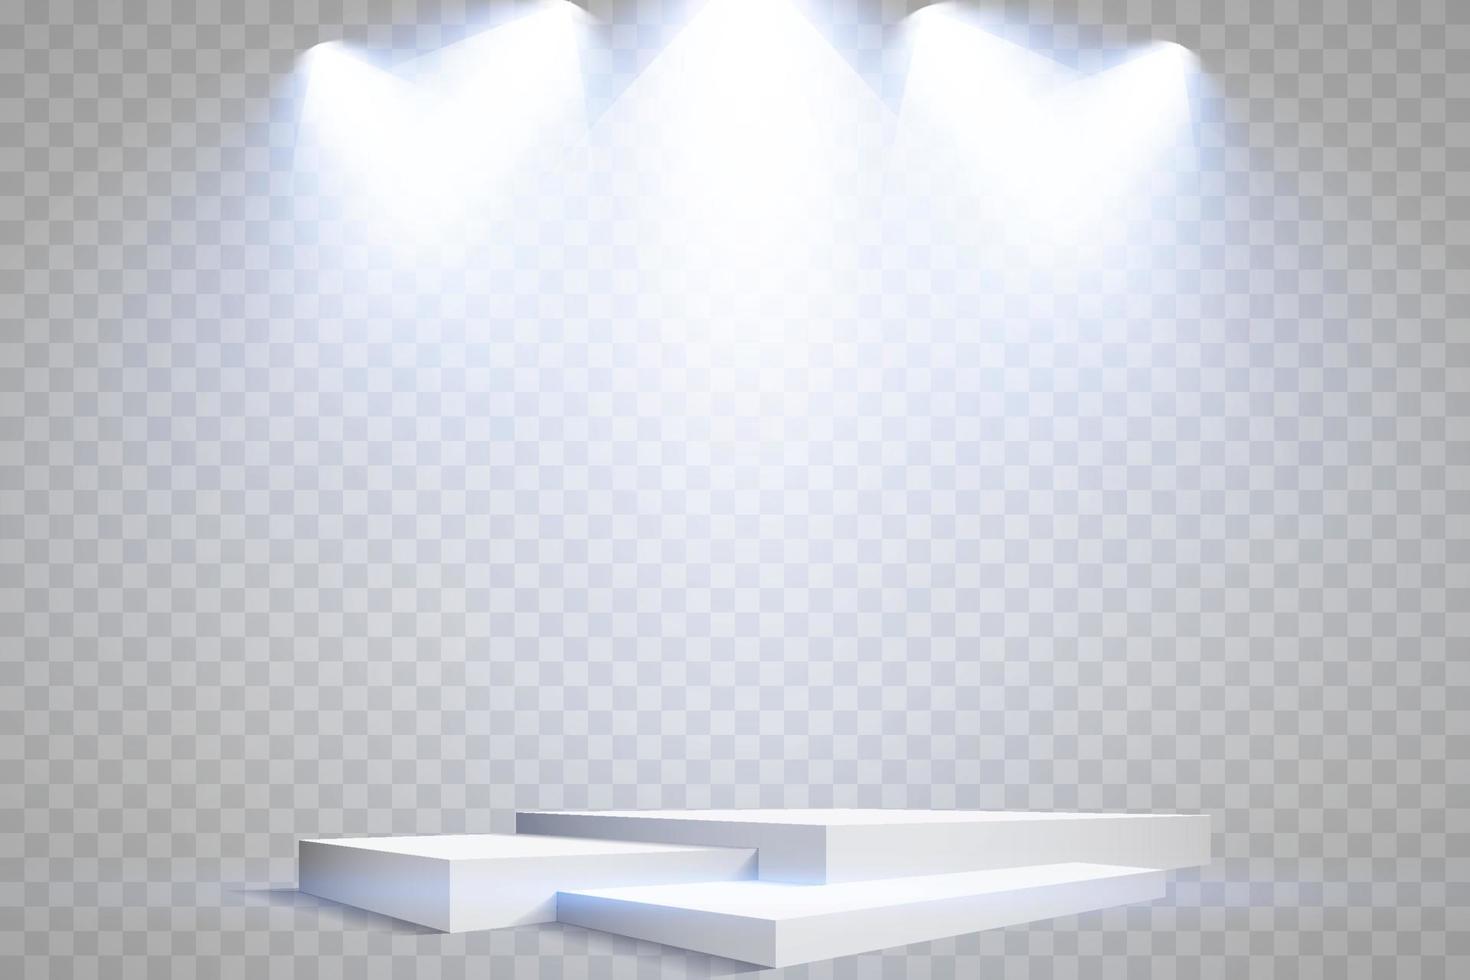 Podium Stand isoliert auf transparent Hintergrund. Weiß Rechteck Sockel, Säule oder Anzeige Bühne. Vektor leeren Preis- Sockel mit Blau Beamer Licht Balken.